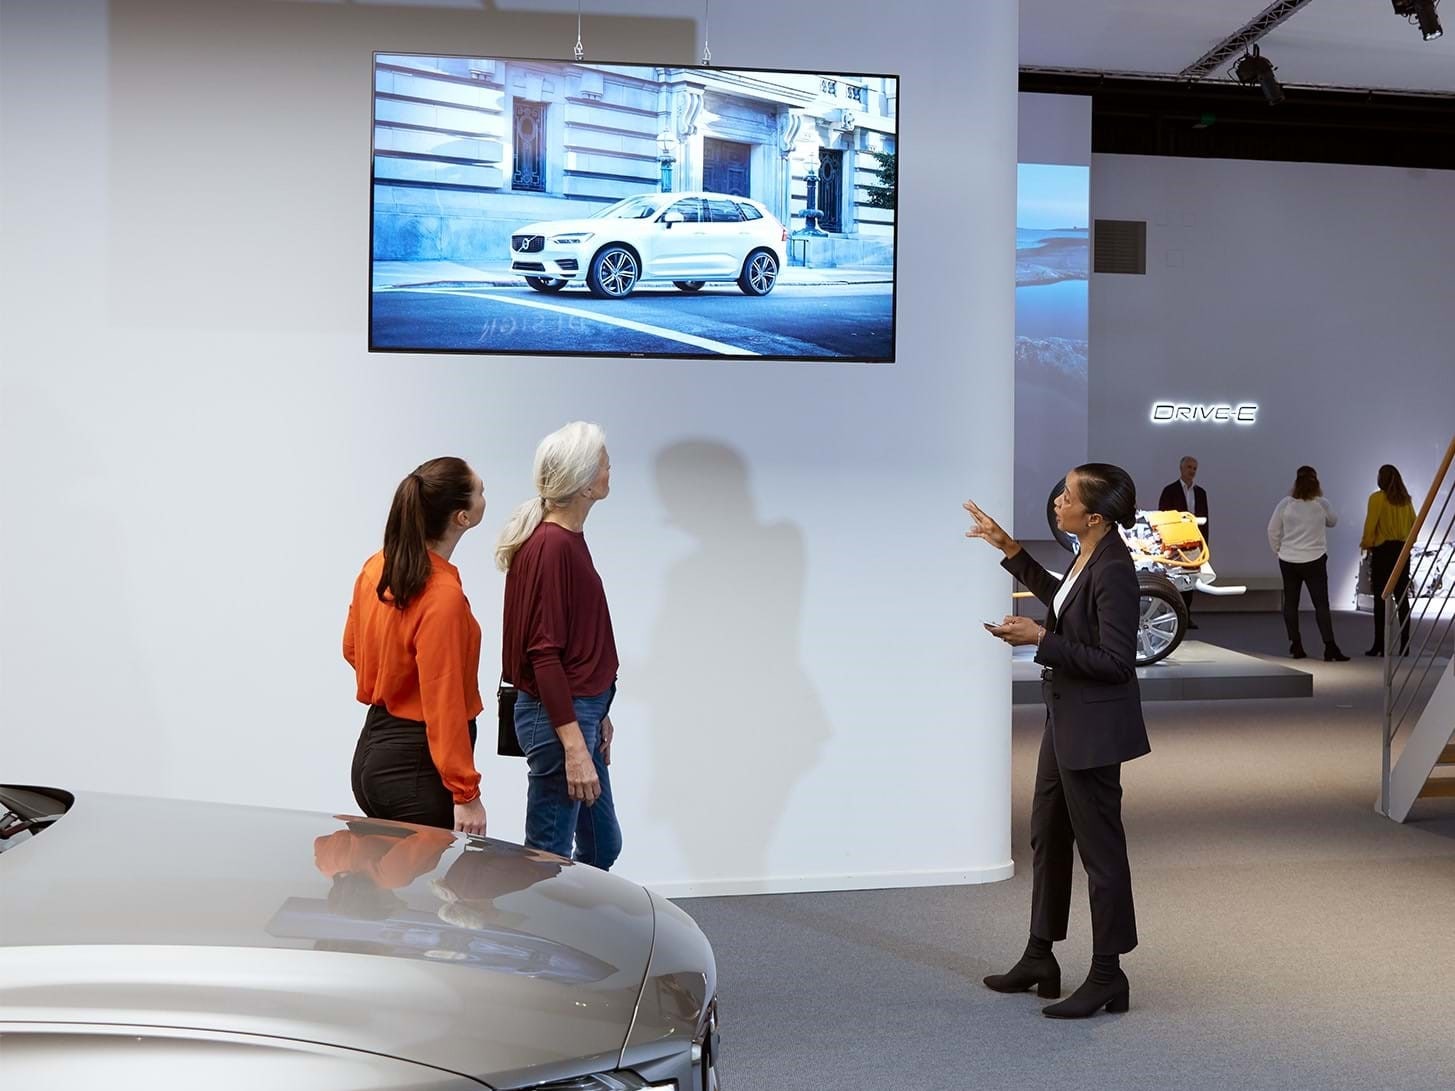 Besucher der Ausstellung im Volvo Cars Brand Experience Center schauen auf einen Bildschirm.